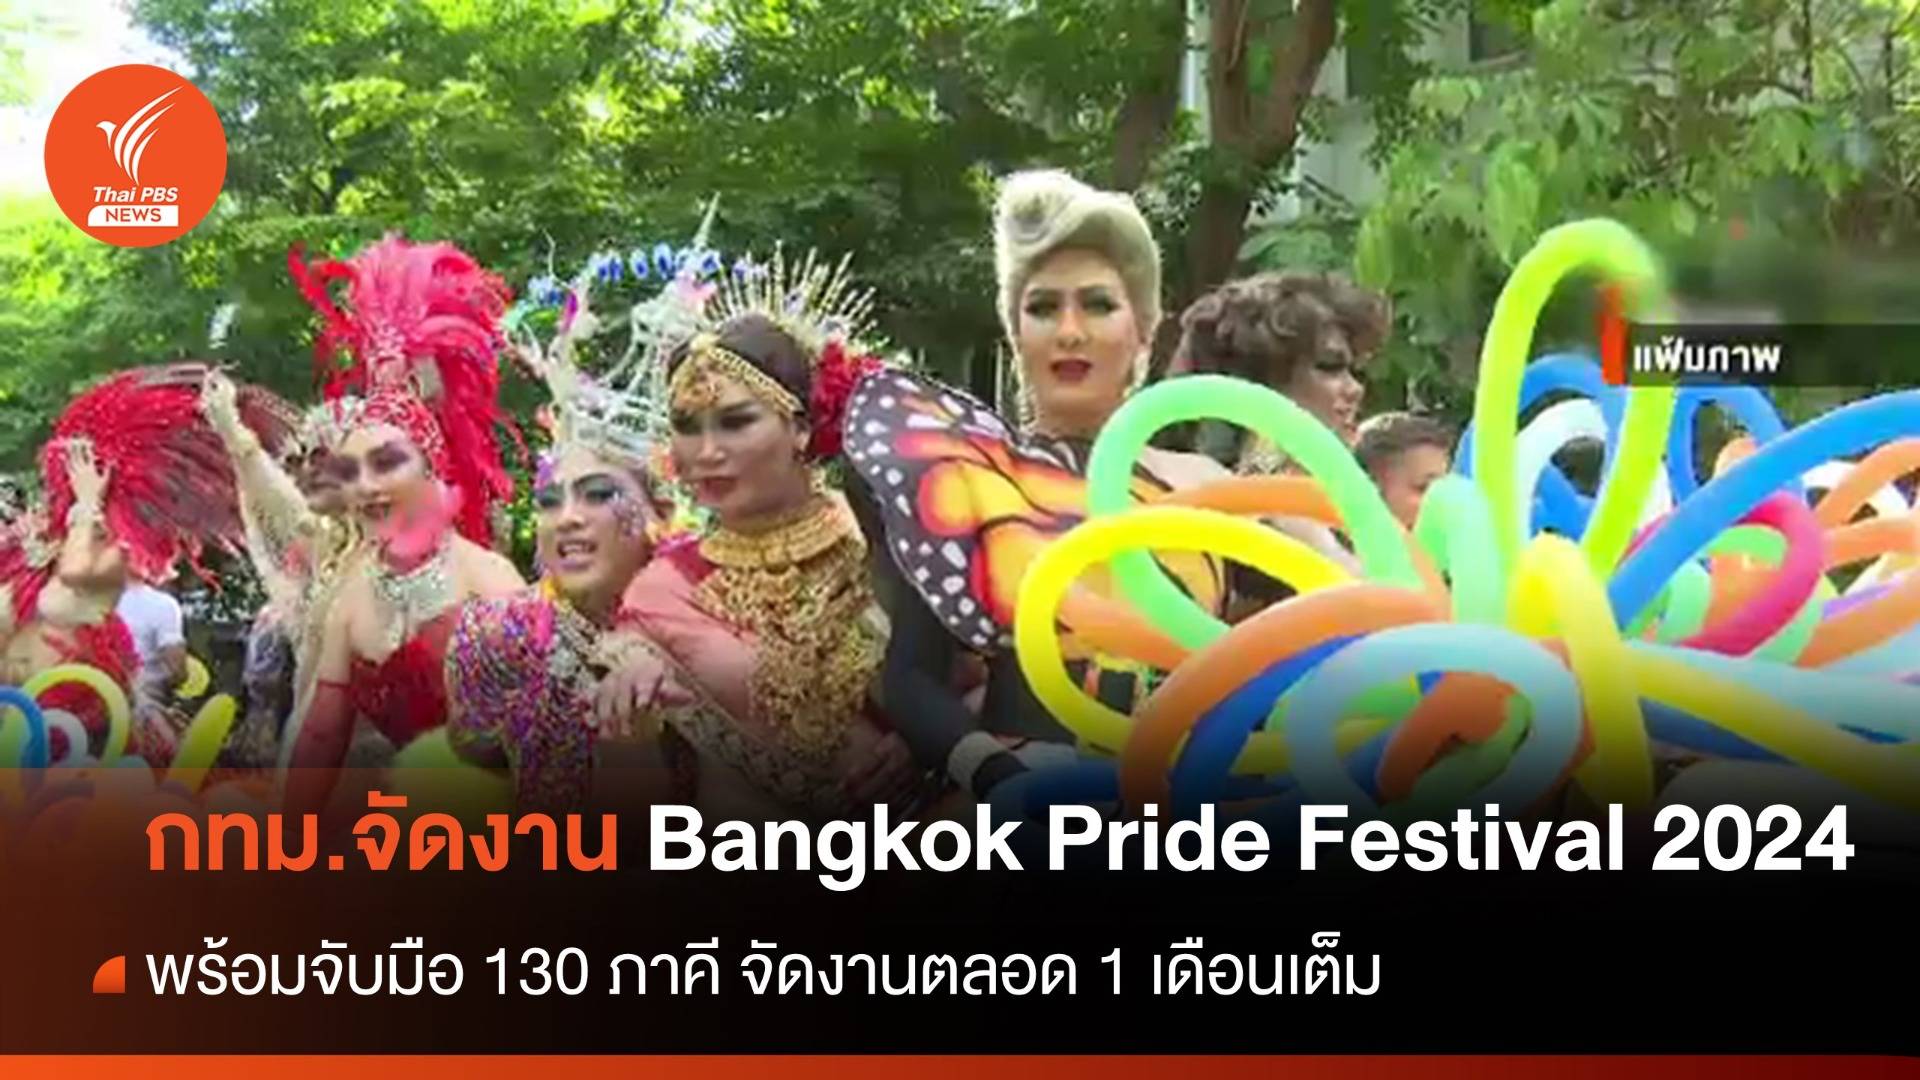 กทม.ร่วม 130 ภาคี จัดงาน "Bangkok Pride Festival 2024" ตลอด มิ.ย.นี้ 